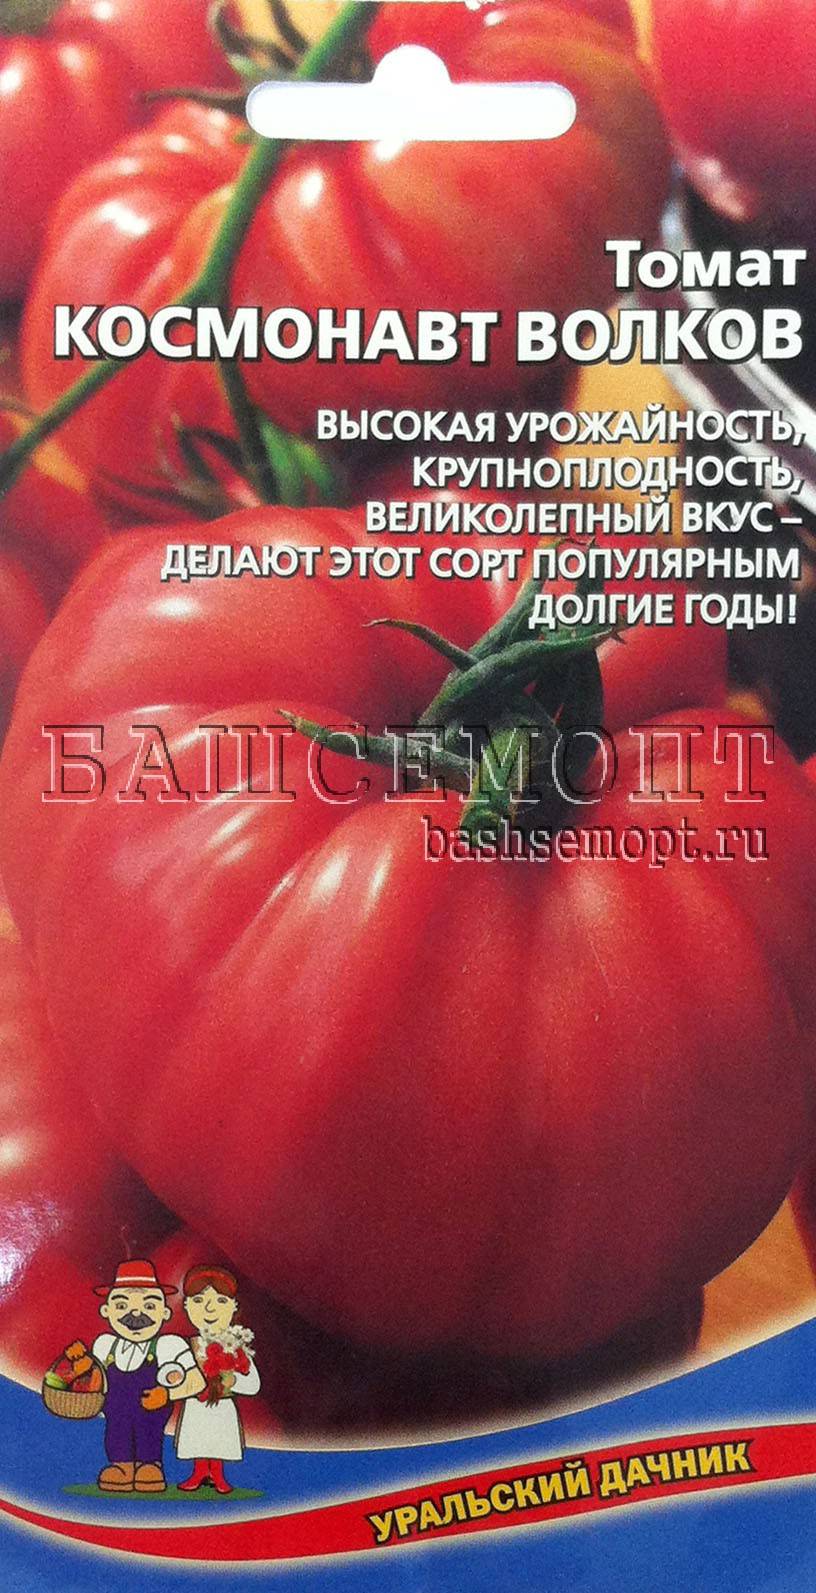 Сорт томатов космонавт волков: особенности, характеристики, отзывы